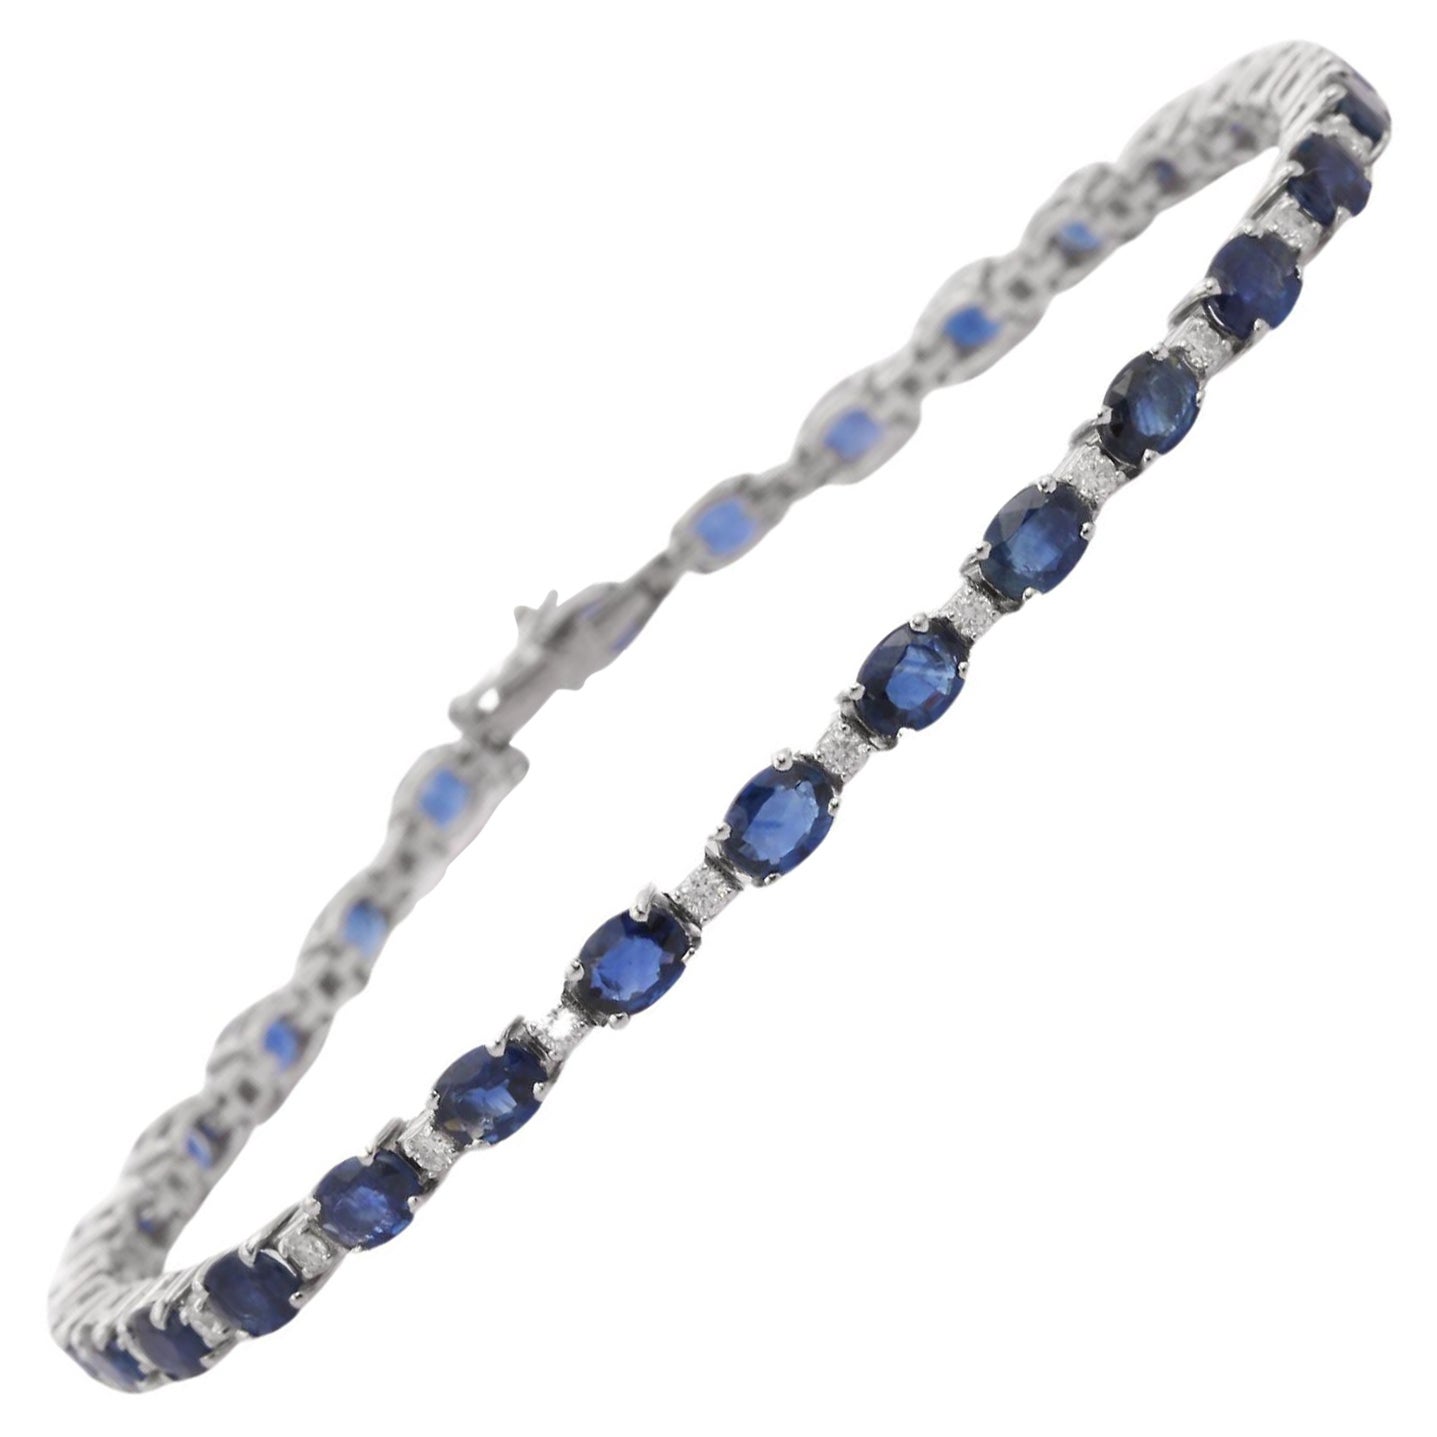 Bracelet tennis en or blanc 18 carats avec saphirs bleus de taille ovale et diamants, cadeau pour elle